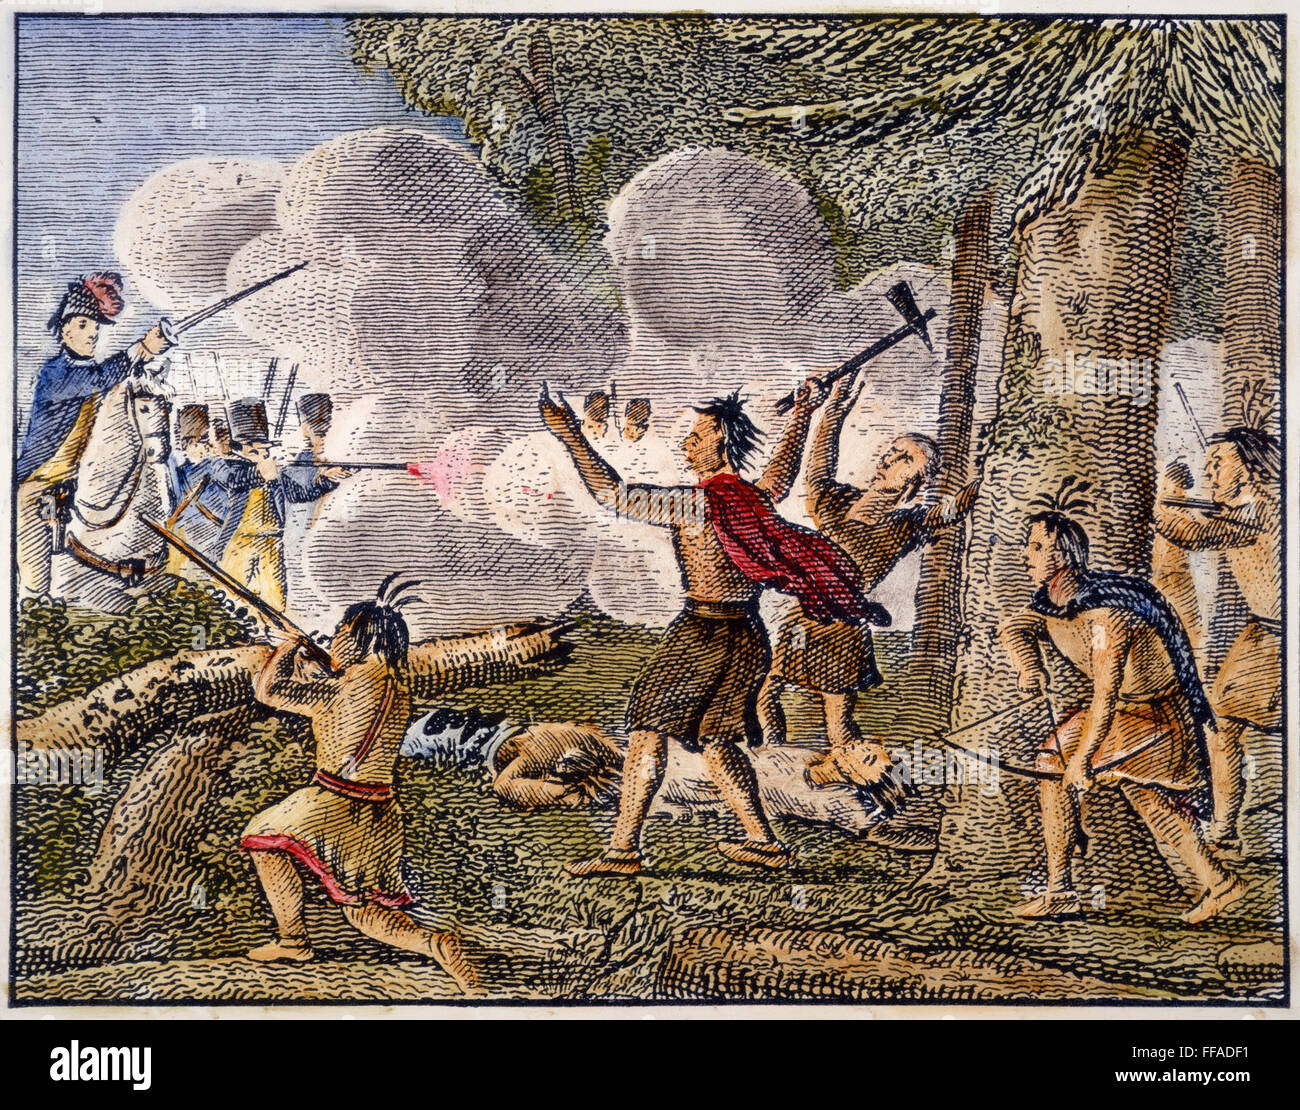 Guerra YAMASEE, 1715. /NGovernor Craven della Carolina del Sud attacca i Yamasee nativi americani al Combahee River nel 1715 all inizio della guerra Yamasee. Incisione su legno da "Elementi di storia generale", New Haven, 1844. Foto Stock